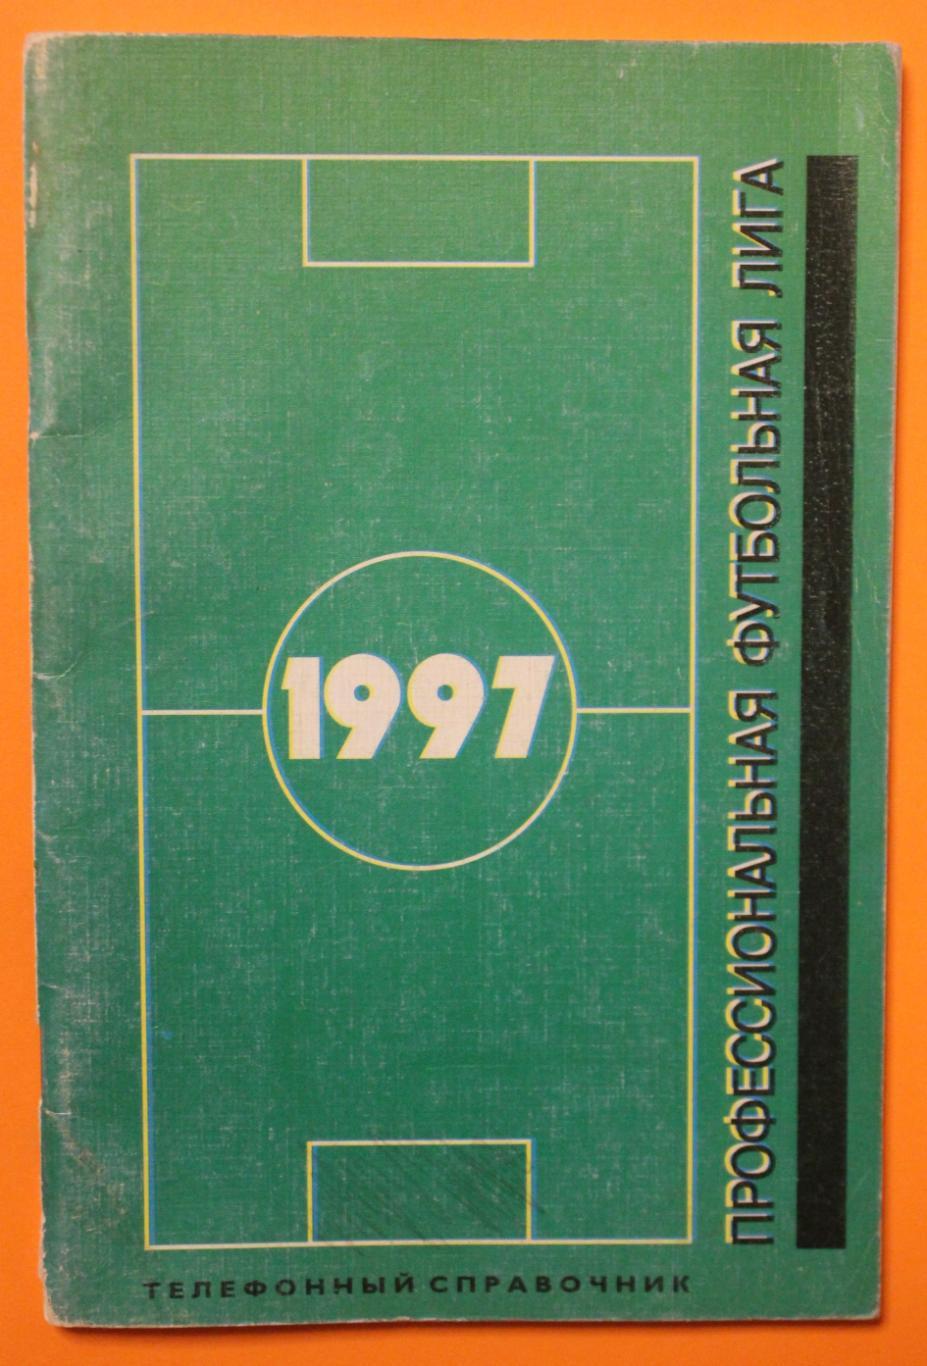 Профессиональная футбольная лига 1997. Телефонный справочник